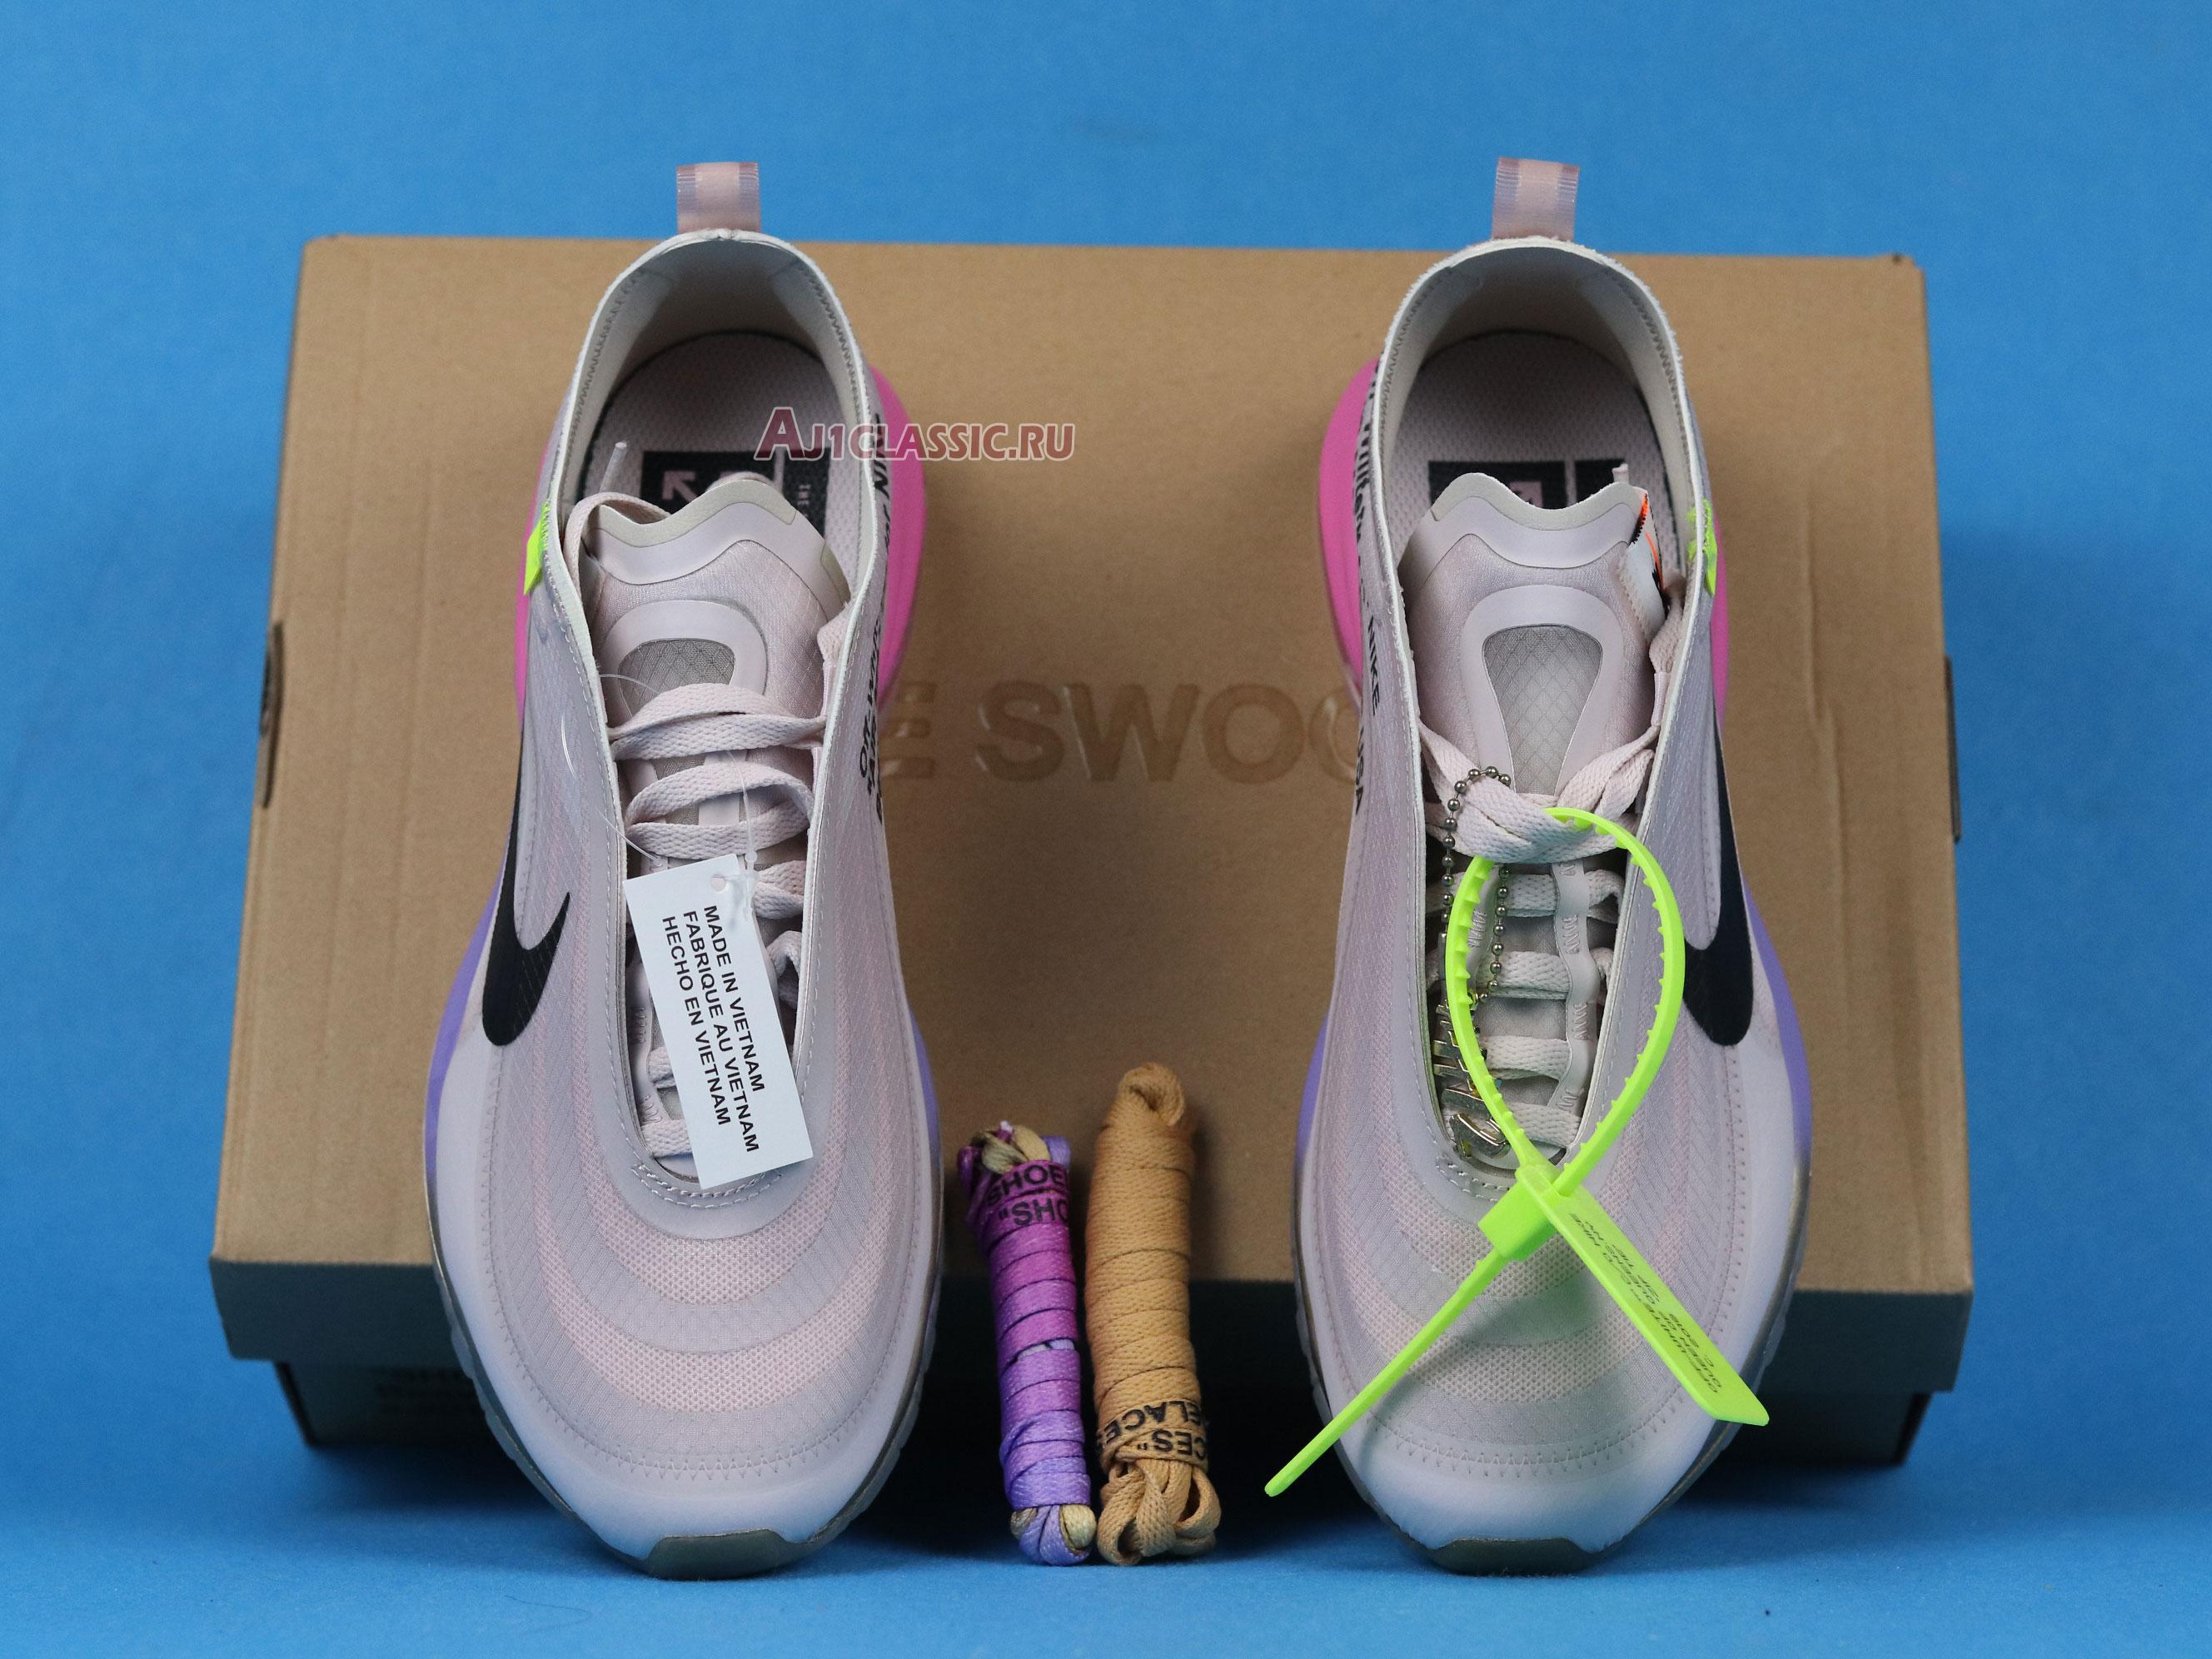 Serena Williams x Off-White x Nike Air Max 97 OG "Queen" AJ4585-600